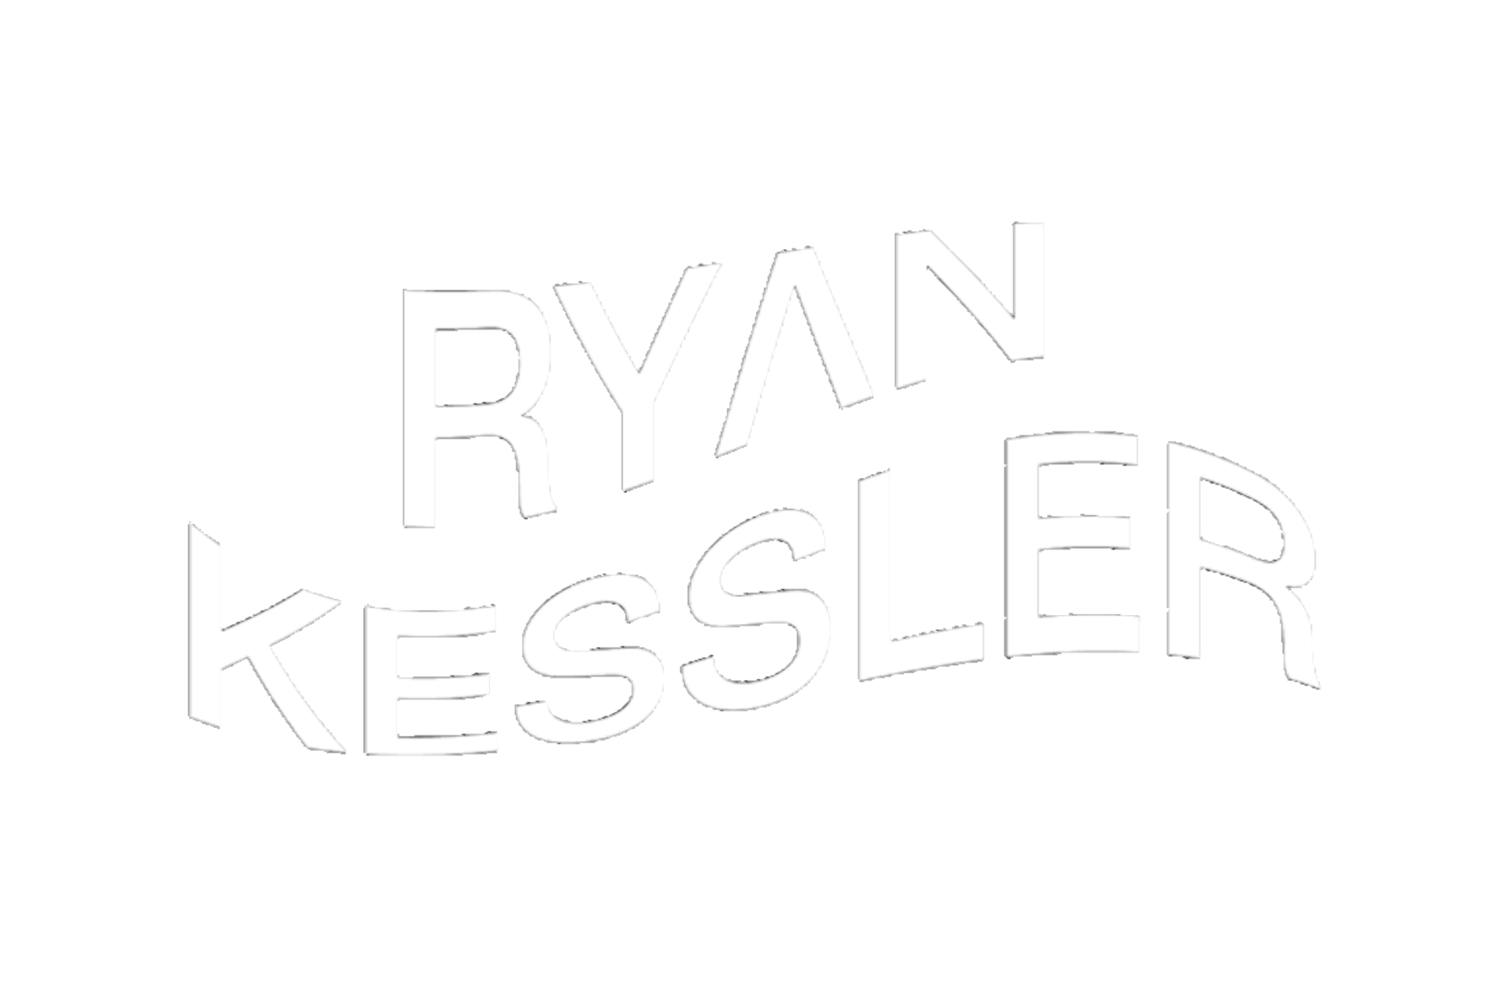 Ryan Kessler